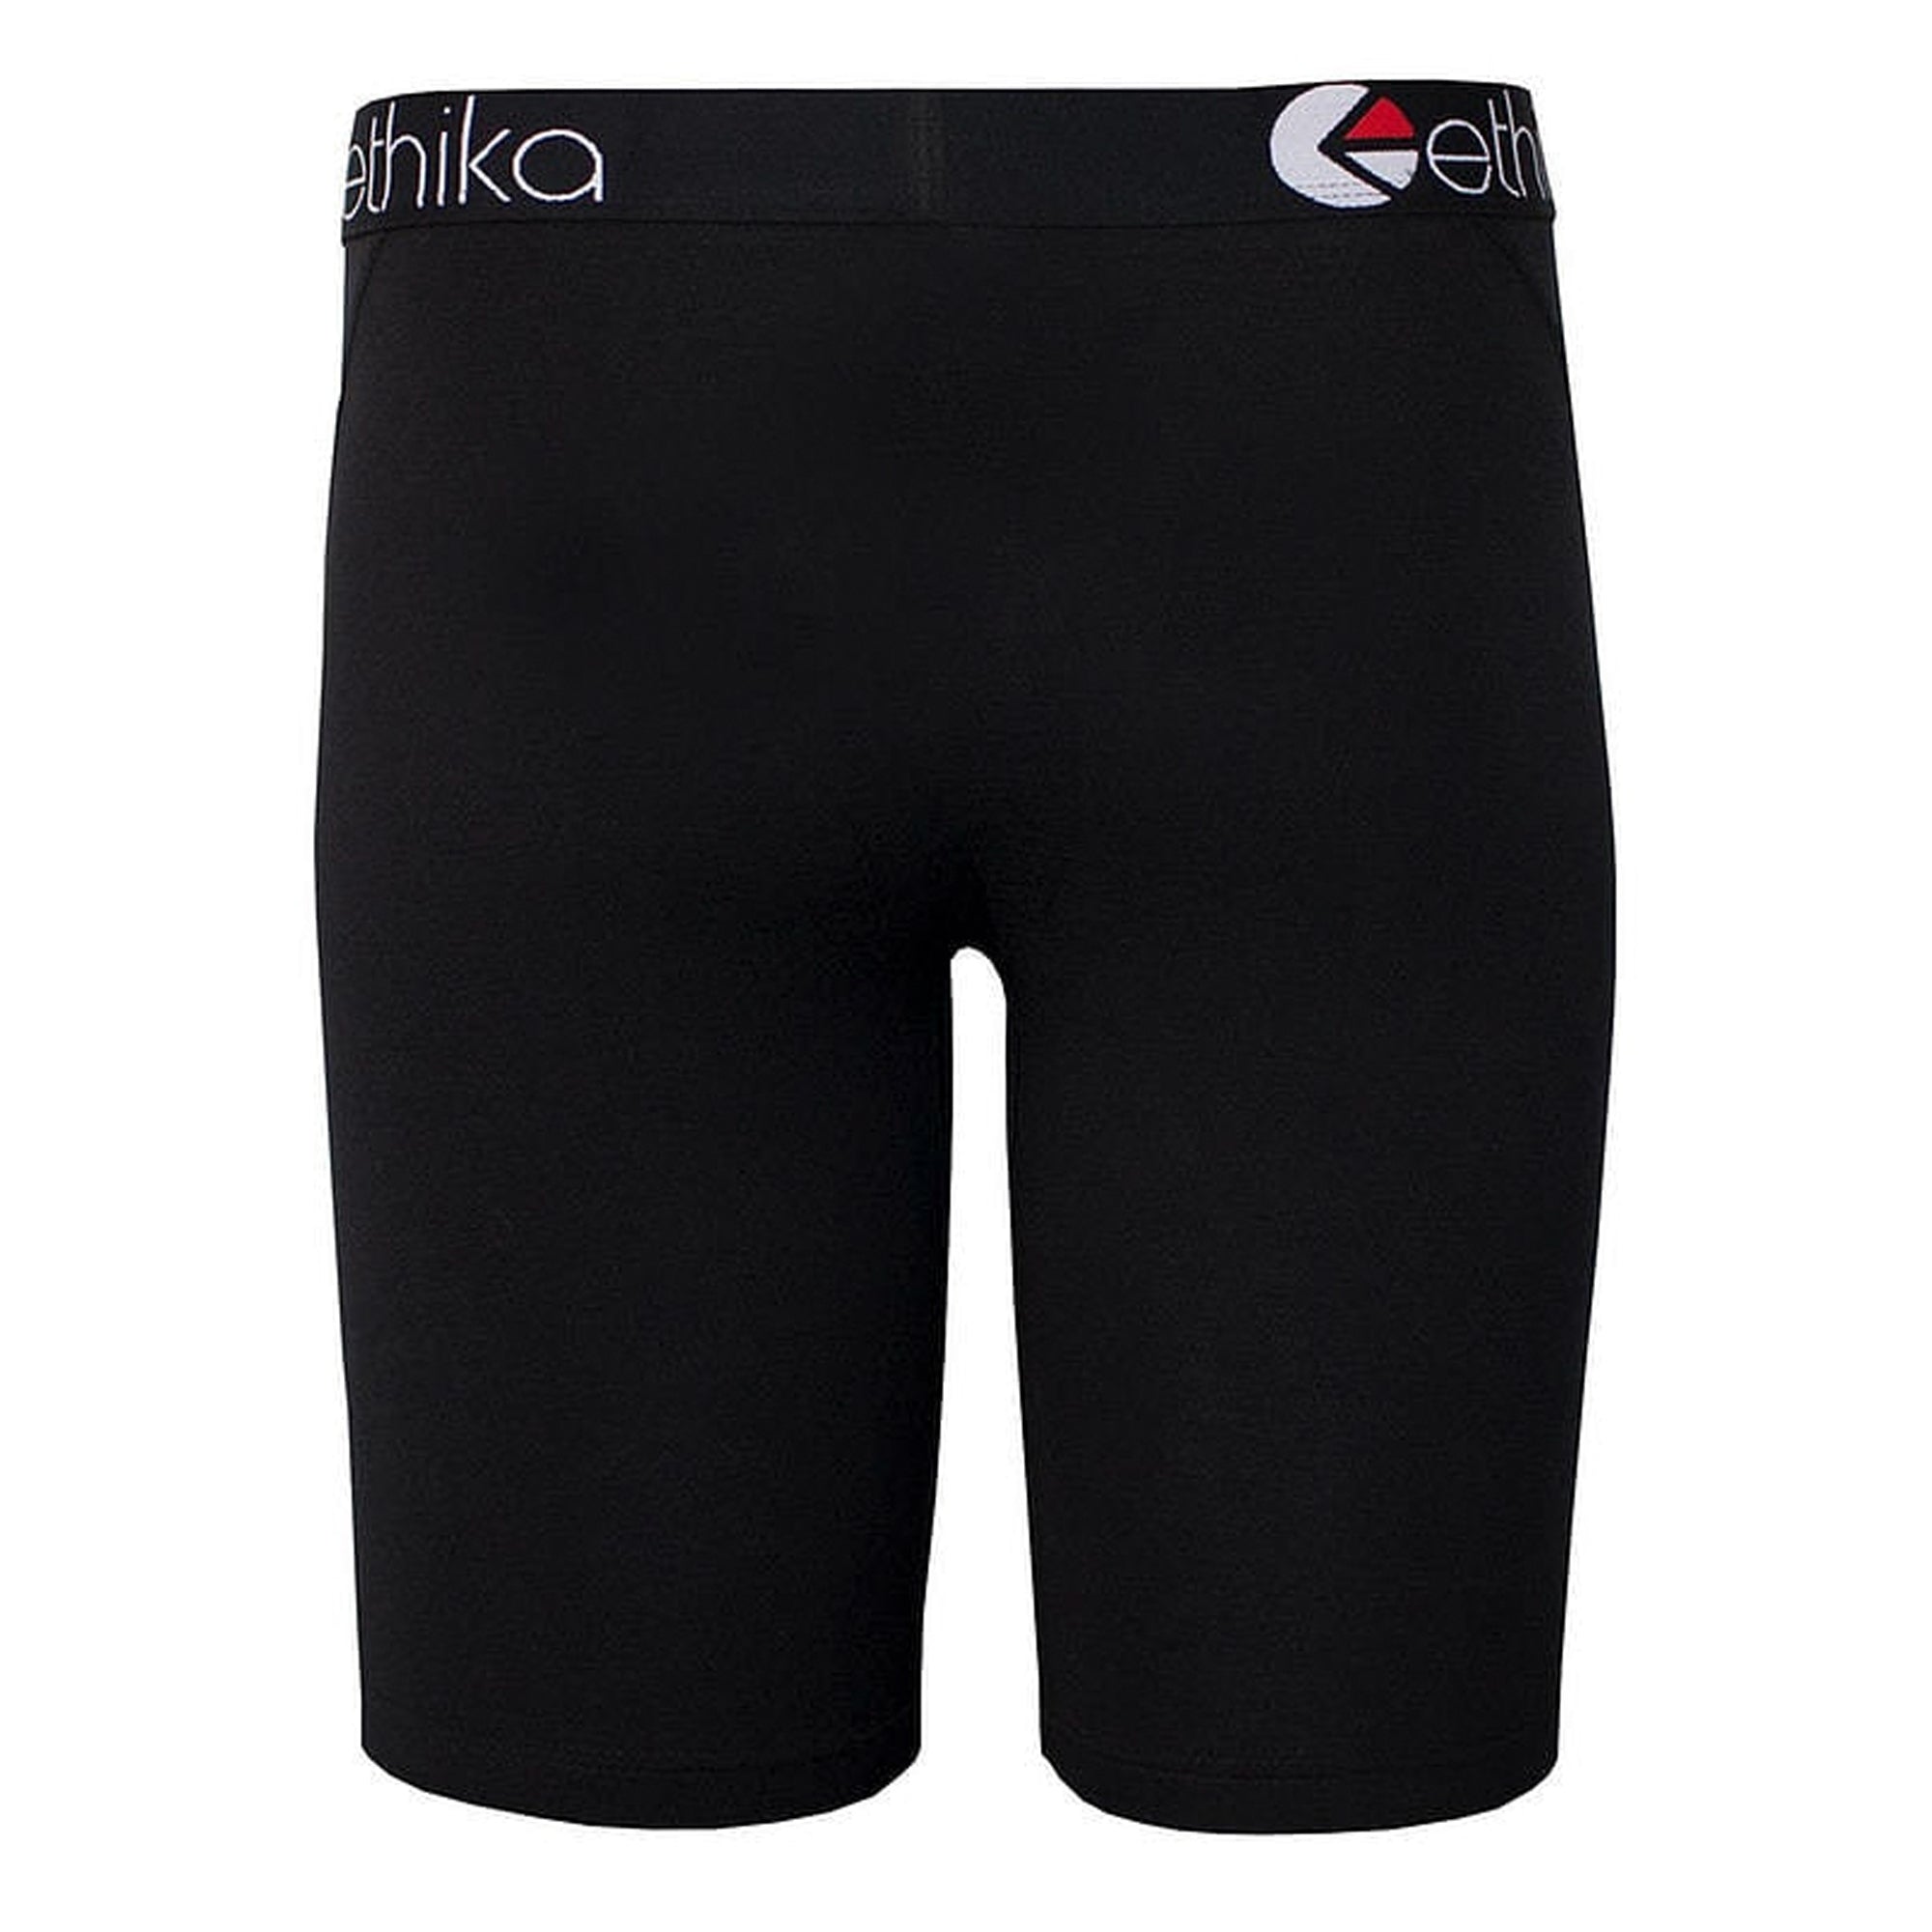 Ethika Men BlackOut Boxer (Black)-Black-Small-Nexus Clothing